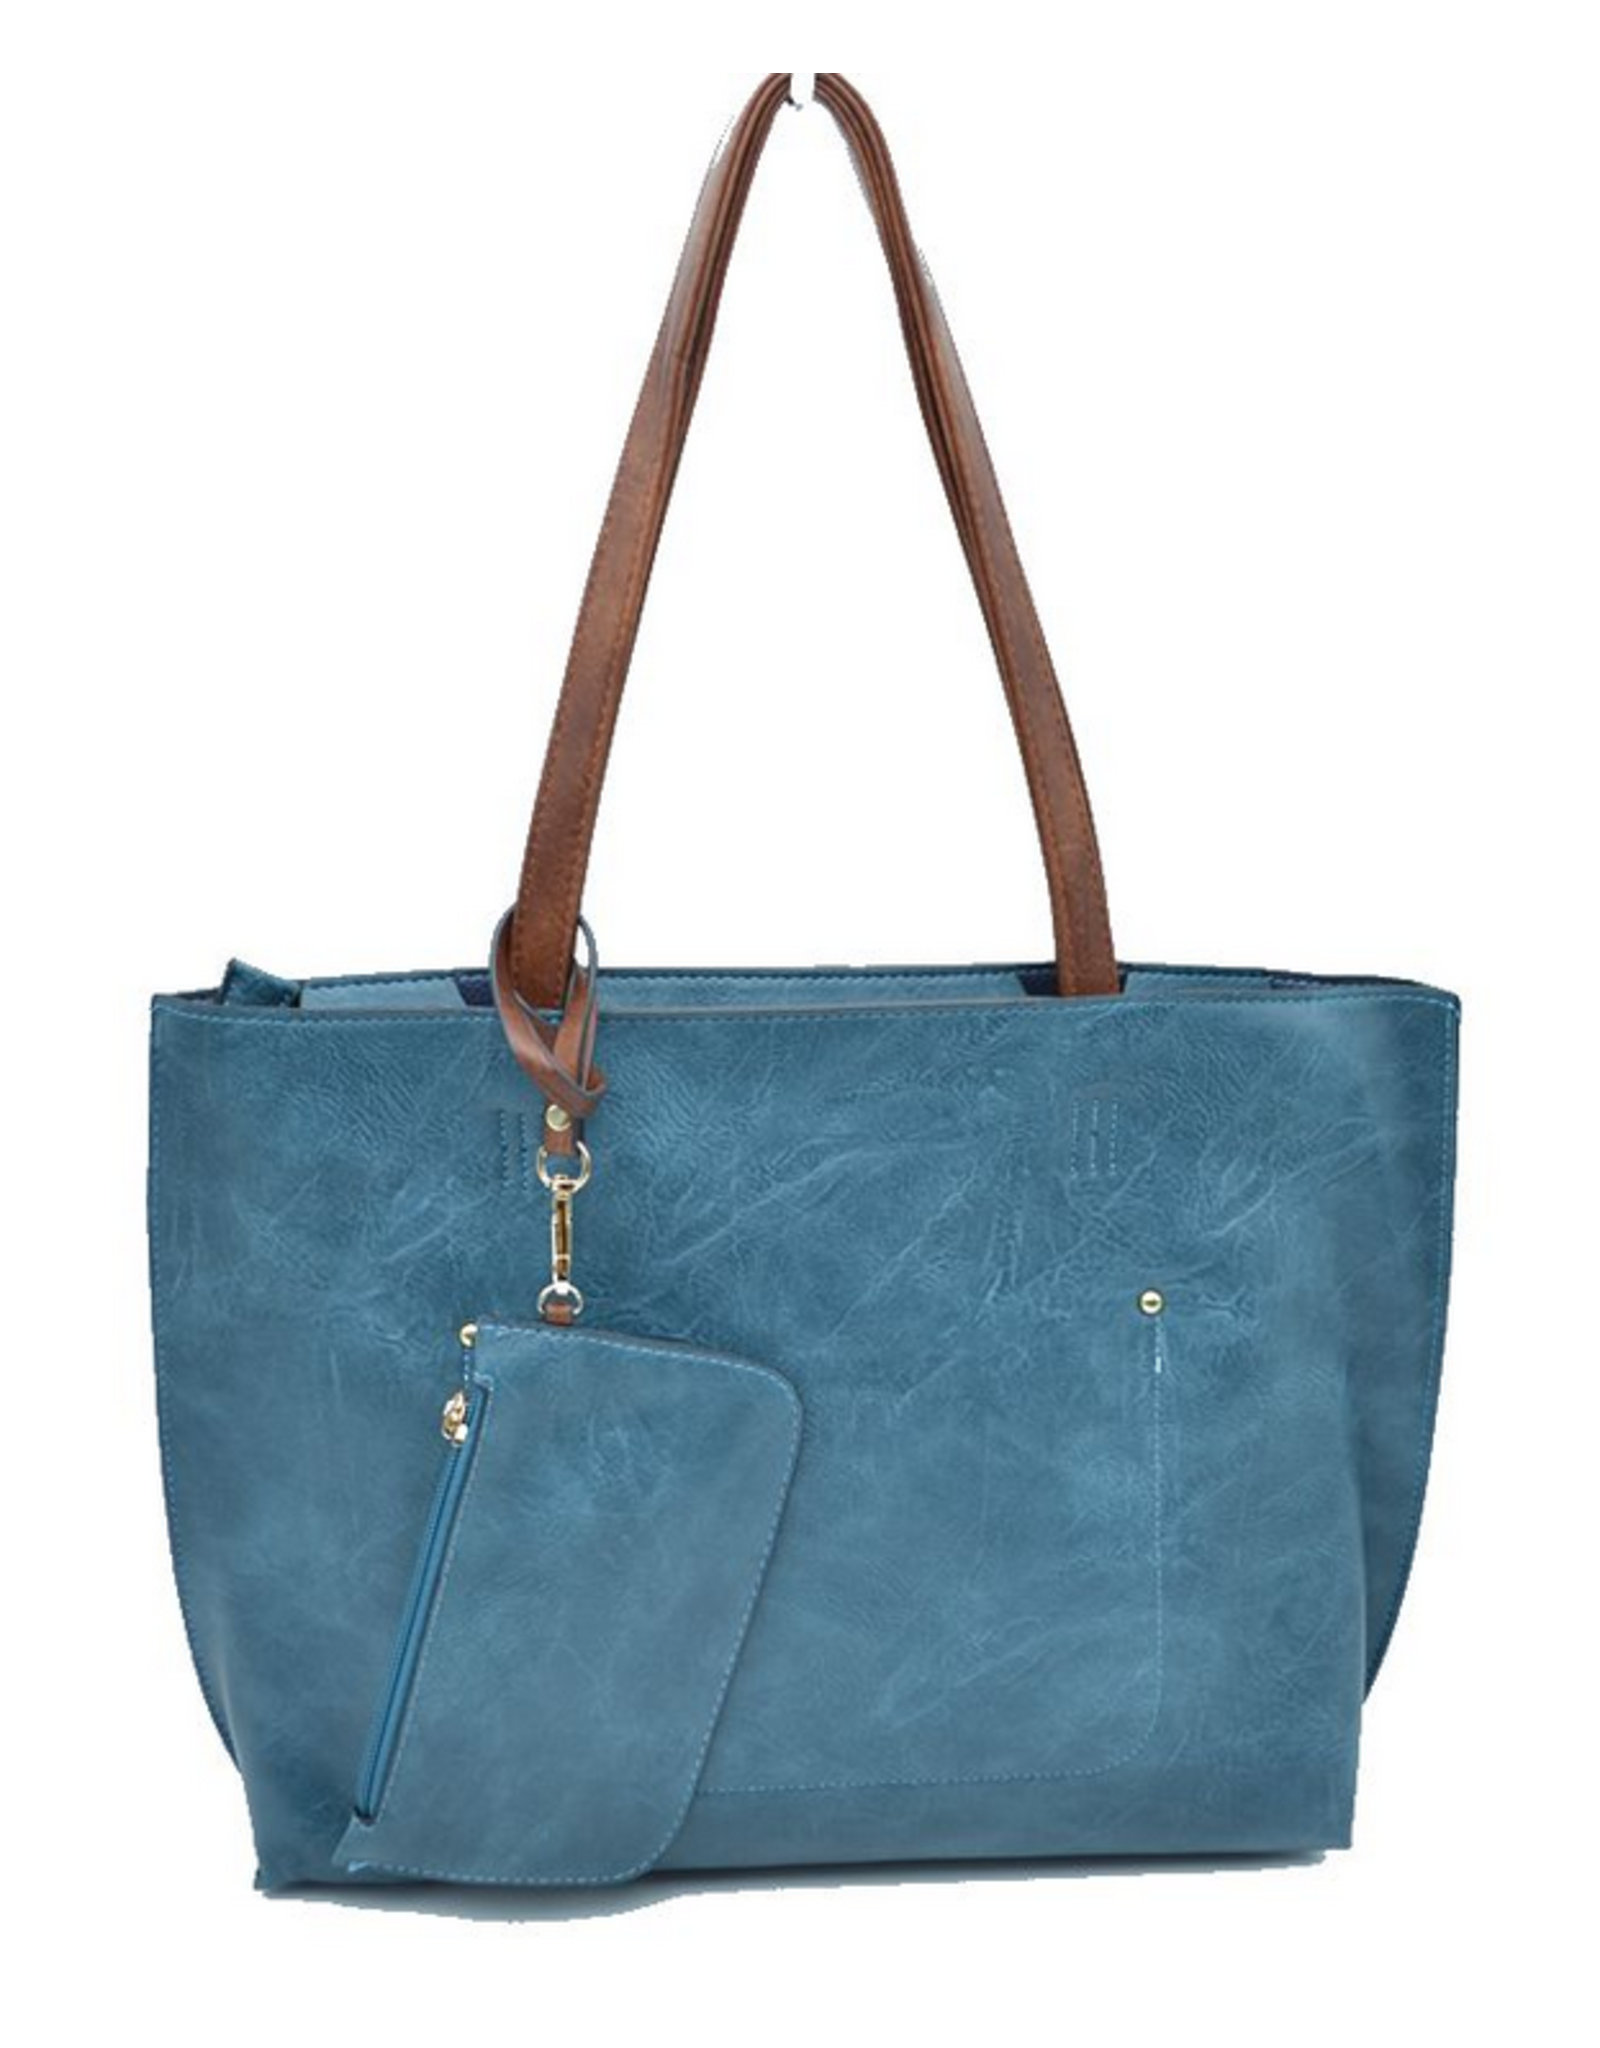 Blue Suede Tote Bag with Additional Shoulder Bag